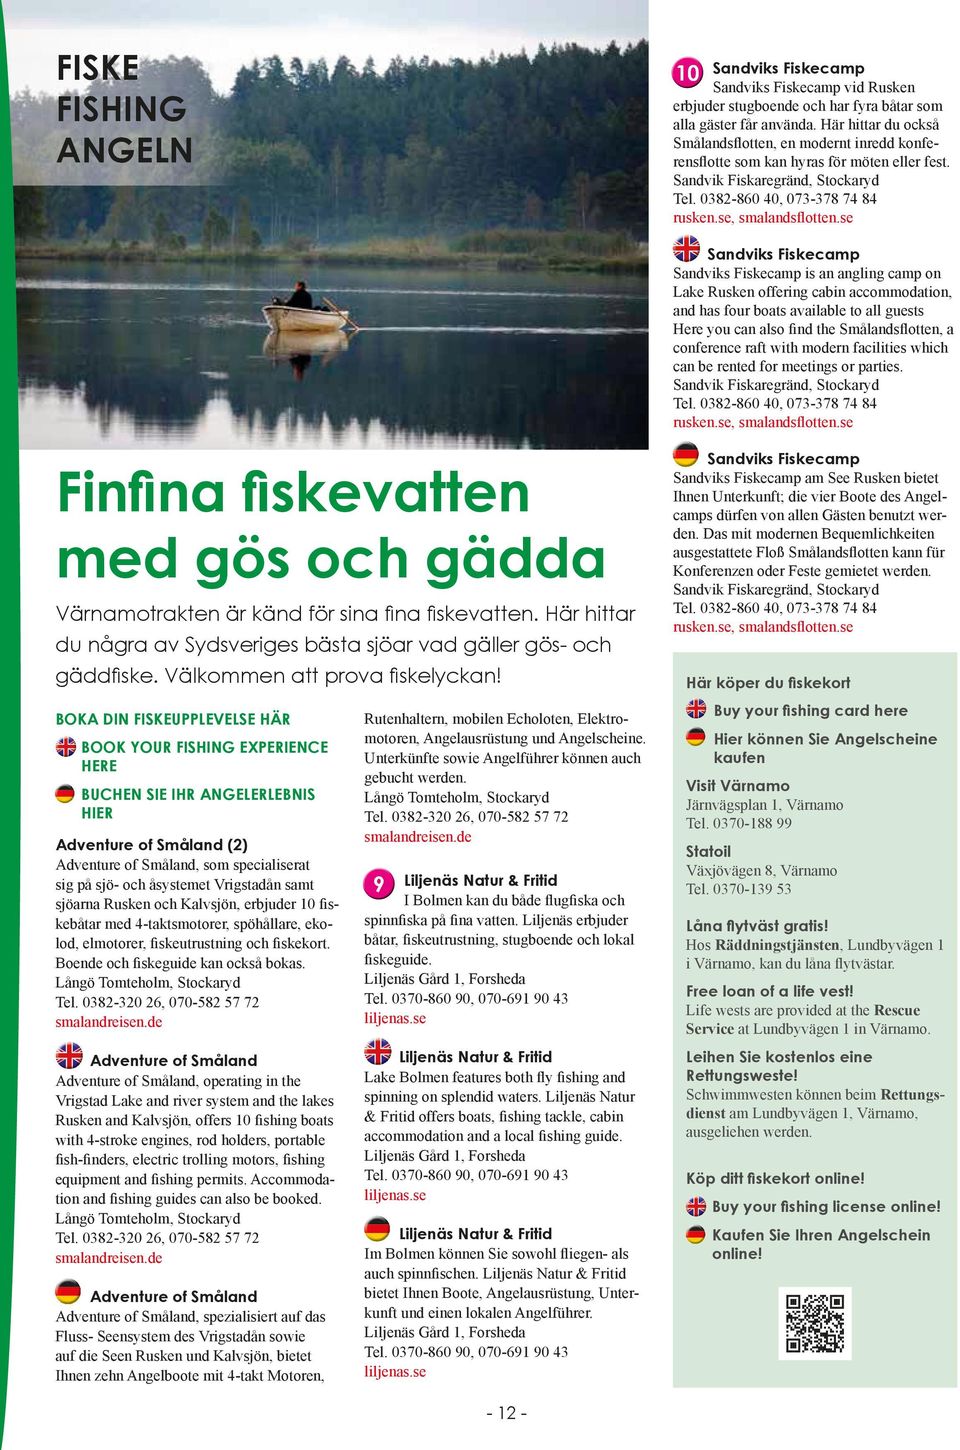 BOKA DIN FISKEUPPLEVELSE HÄR BOOK YOUR FISHING EXPERIENCE HERE BUCHEN SIE IHR ANGELERLEBNIS HIER Adventure of Småland () Adventure of Småland, som specialiserat sig på sjö- och åsystemet Vrigstadån